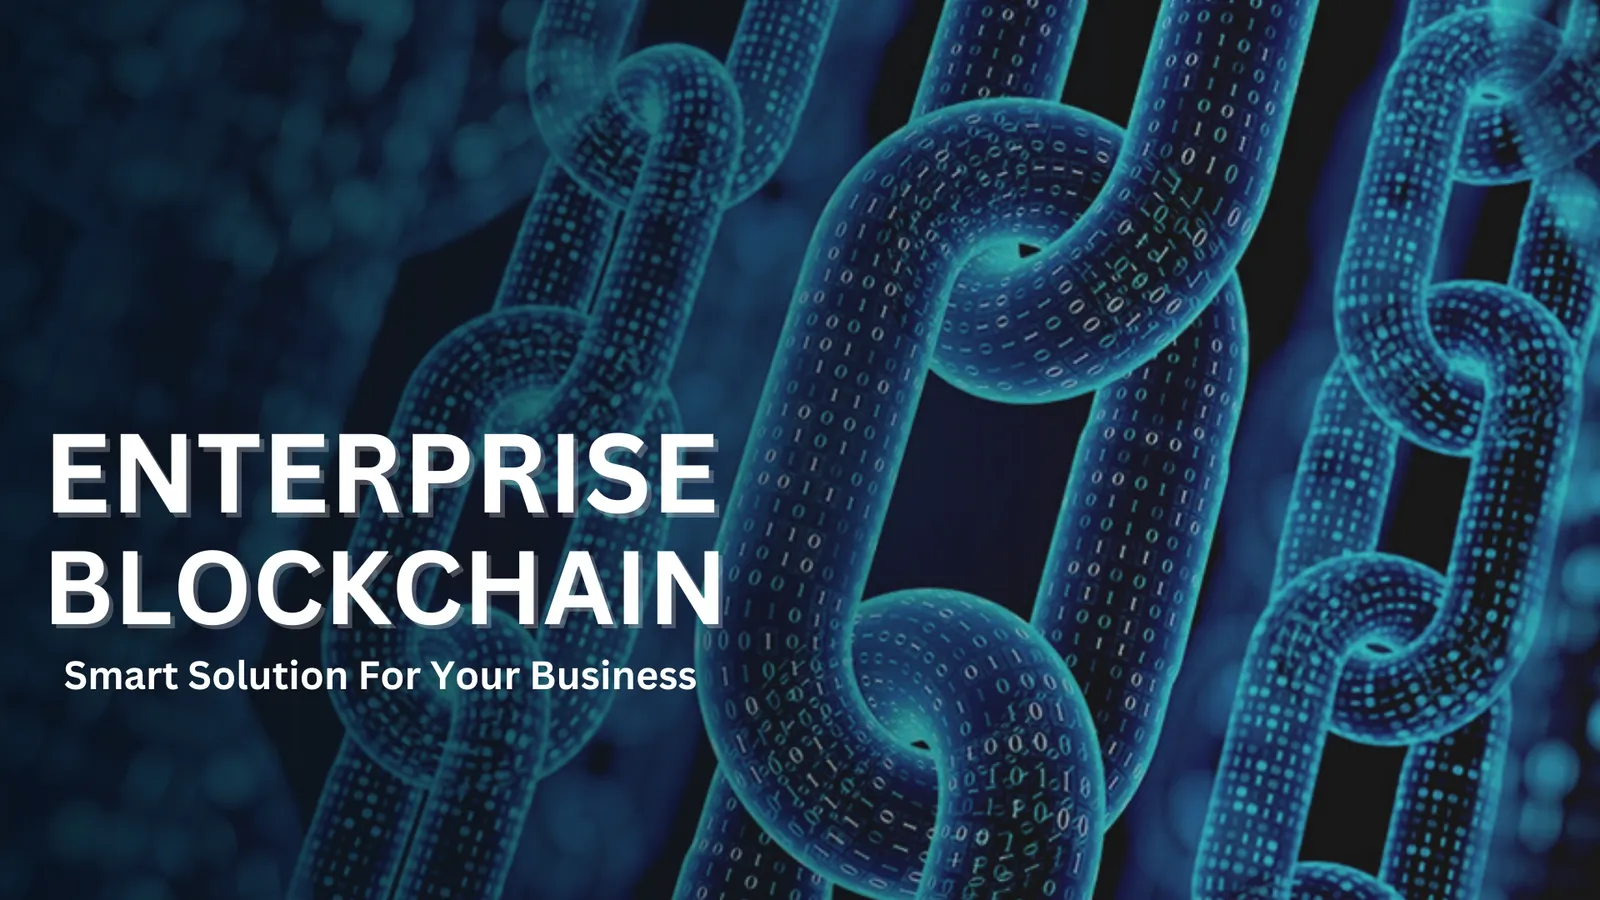 Enterprise Blockchain solutions